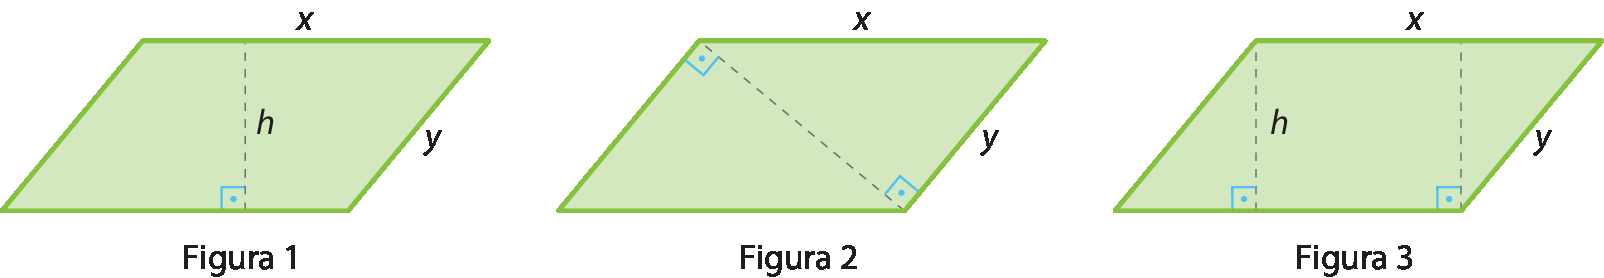 Ilustração. Figura 1. Paralelogramo de lados medindo x e y, dividido ao meio, na vertical por uma linha tracejada indicando h. Destaque para o ângulo reto entre o lado inferior e a linha tracejada.
 
Ilustração. Figura 2. Paralelogramo de lados x e y, dividido ao meio com linha tracejada pela diagonal menor. Destaque para os ângulos retos formados entre a diagonal e o lado menor.
 
Ilustração. Figura 3. Paralelogramo de lados medindo x e y,  dividido com linhas tracejadas por duas alturas com indicação h. Destaque para os ângulos retos das linhas tracejadas com o lado inferior.